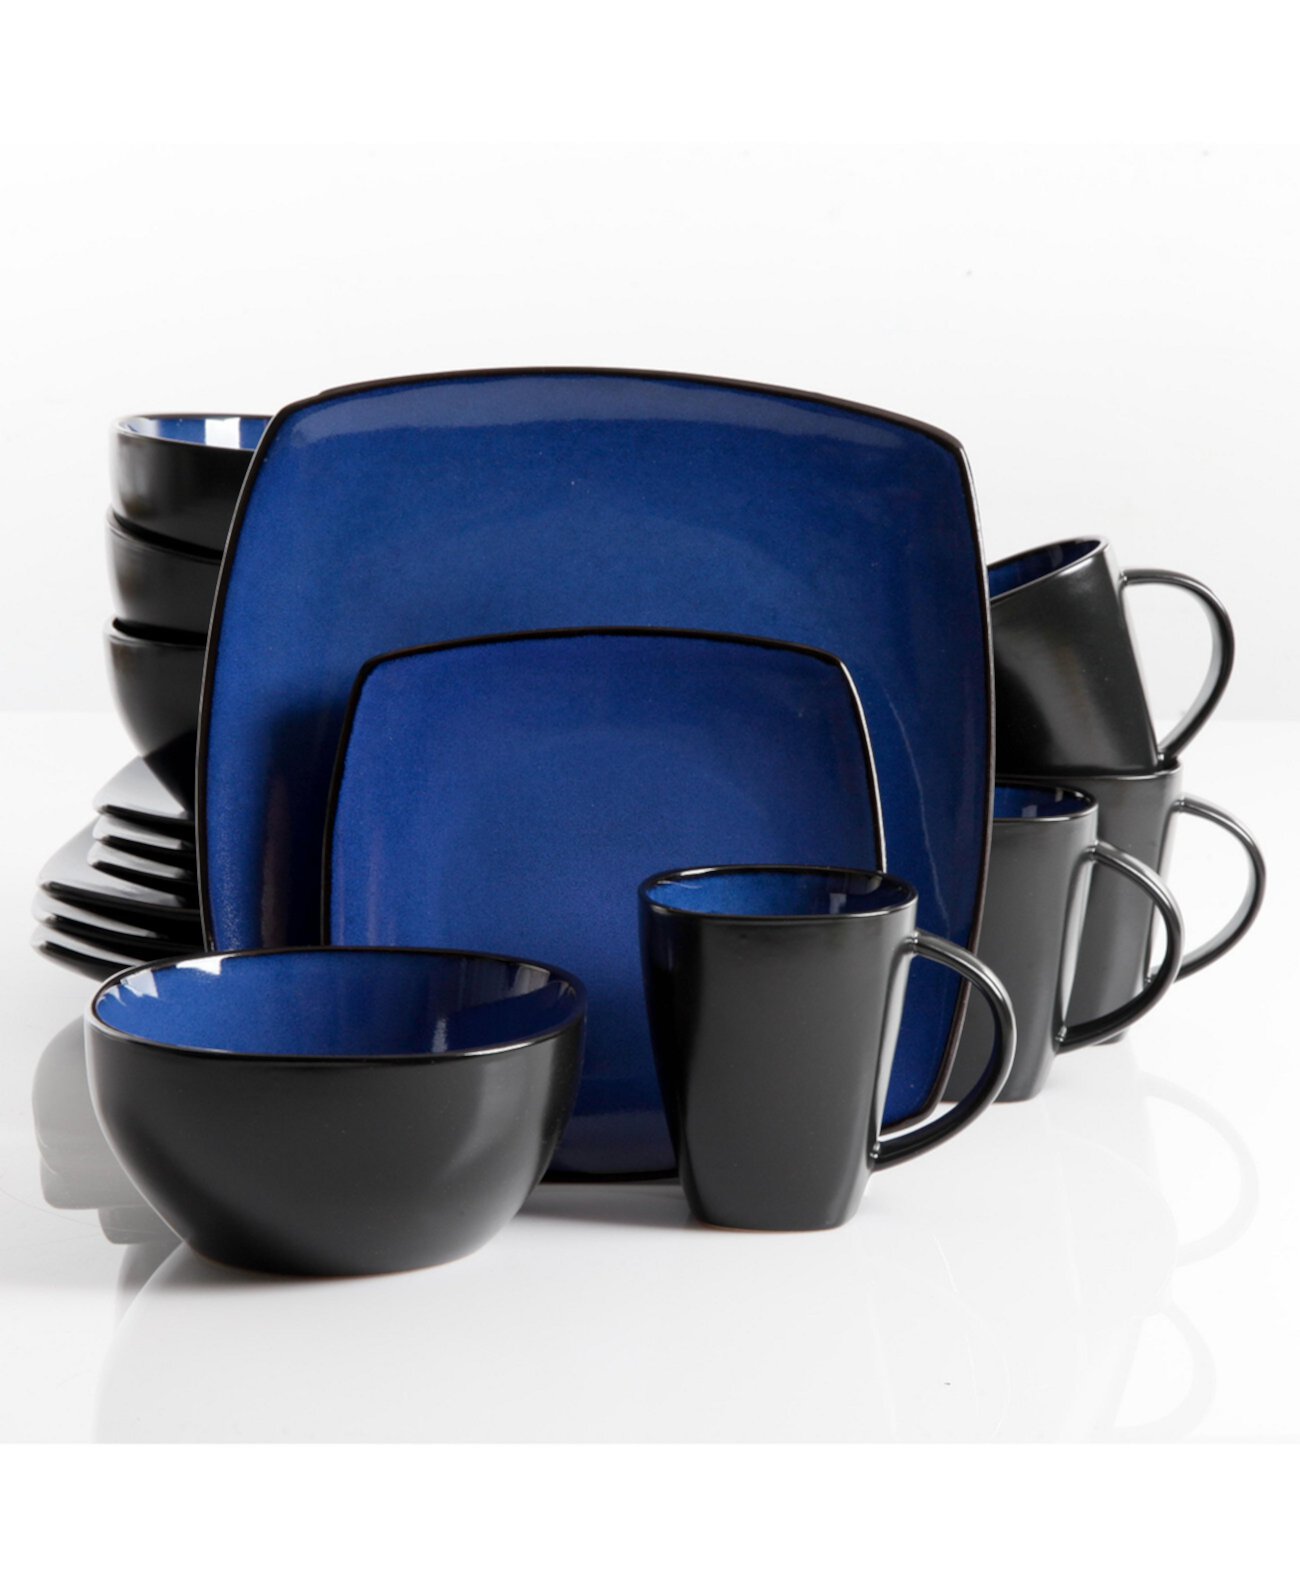 Soho Lounge Набор столовой посуды из 16 предметов, синий, сервиз для 4 человек Gibson